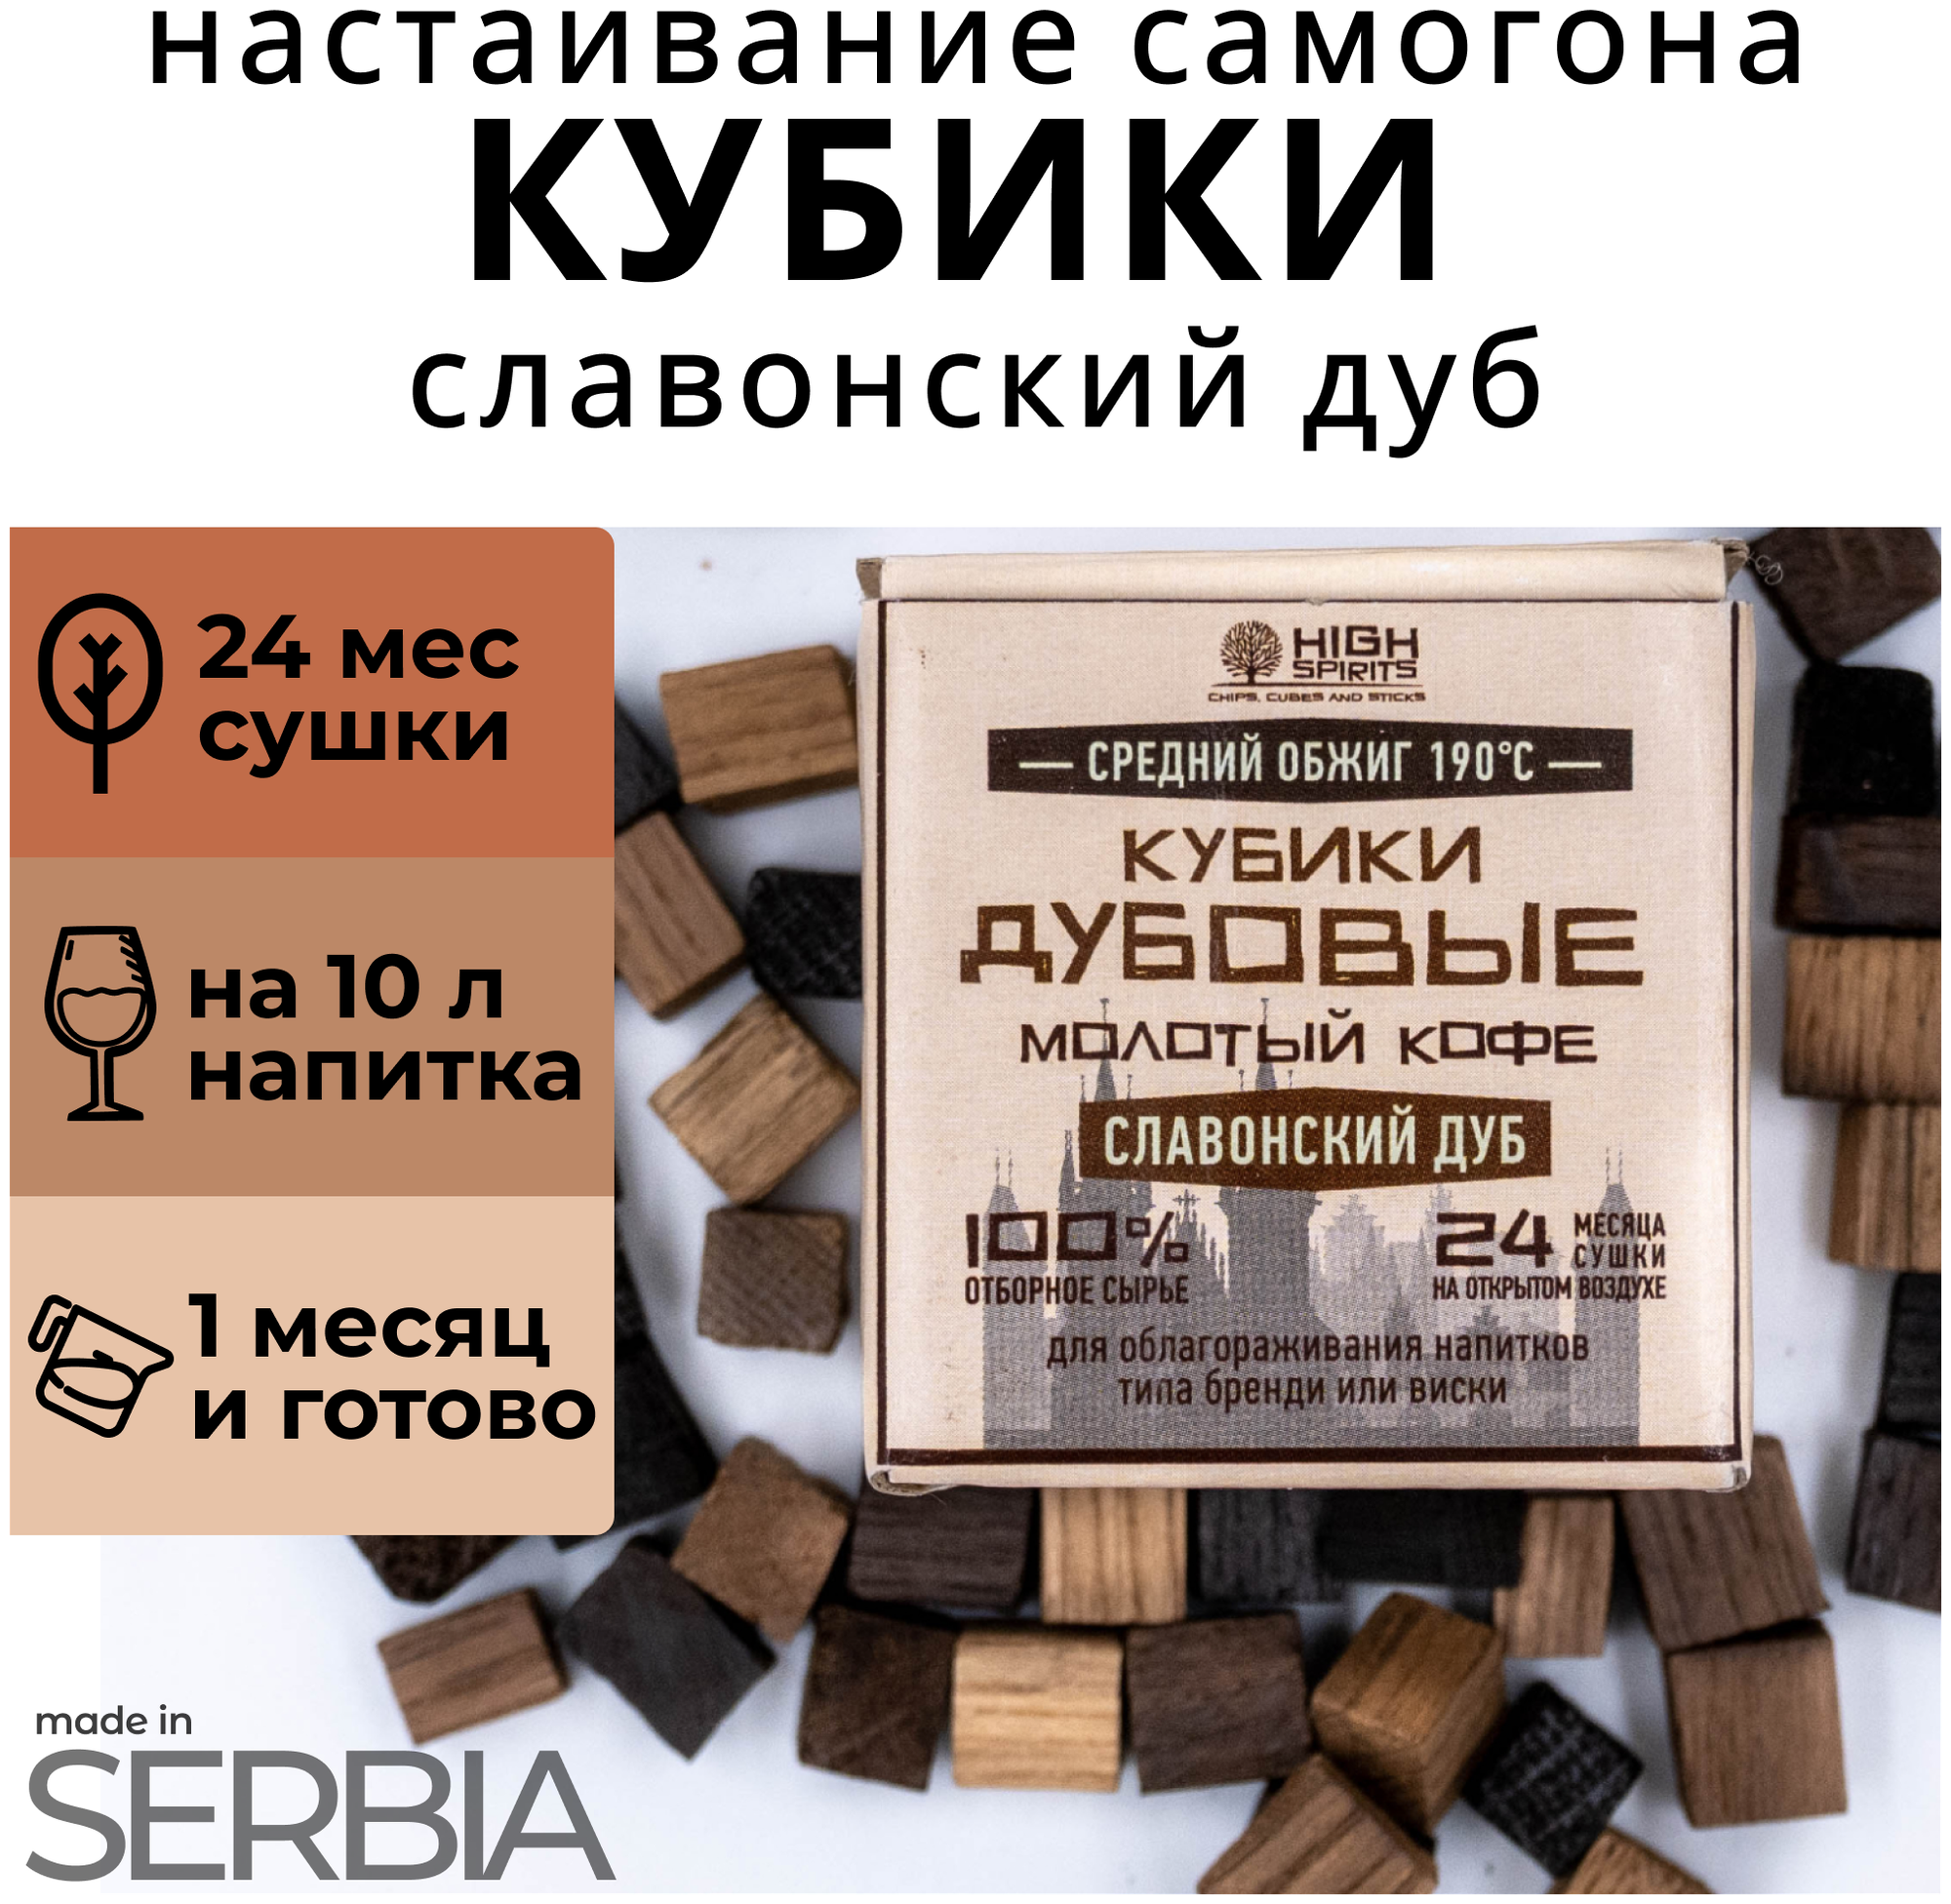 Кубики для настаивания самогона из Сербского дуба/ Славонские кубики Молотый Кофе / щепа дубовая